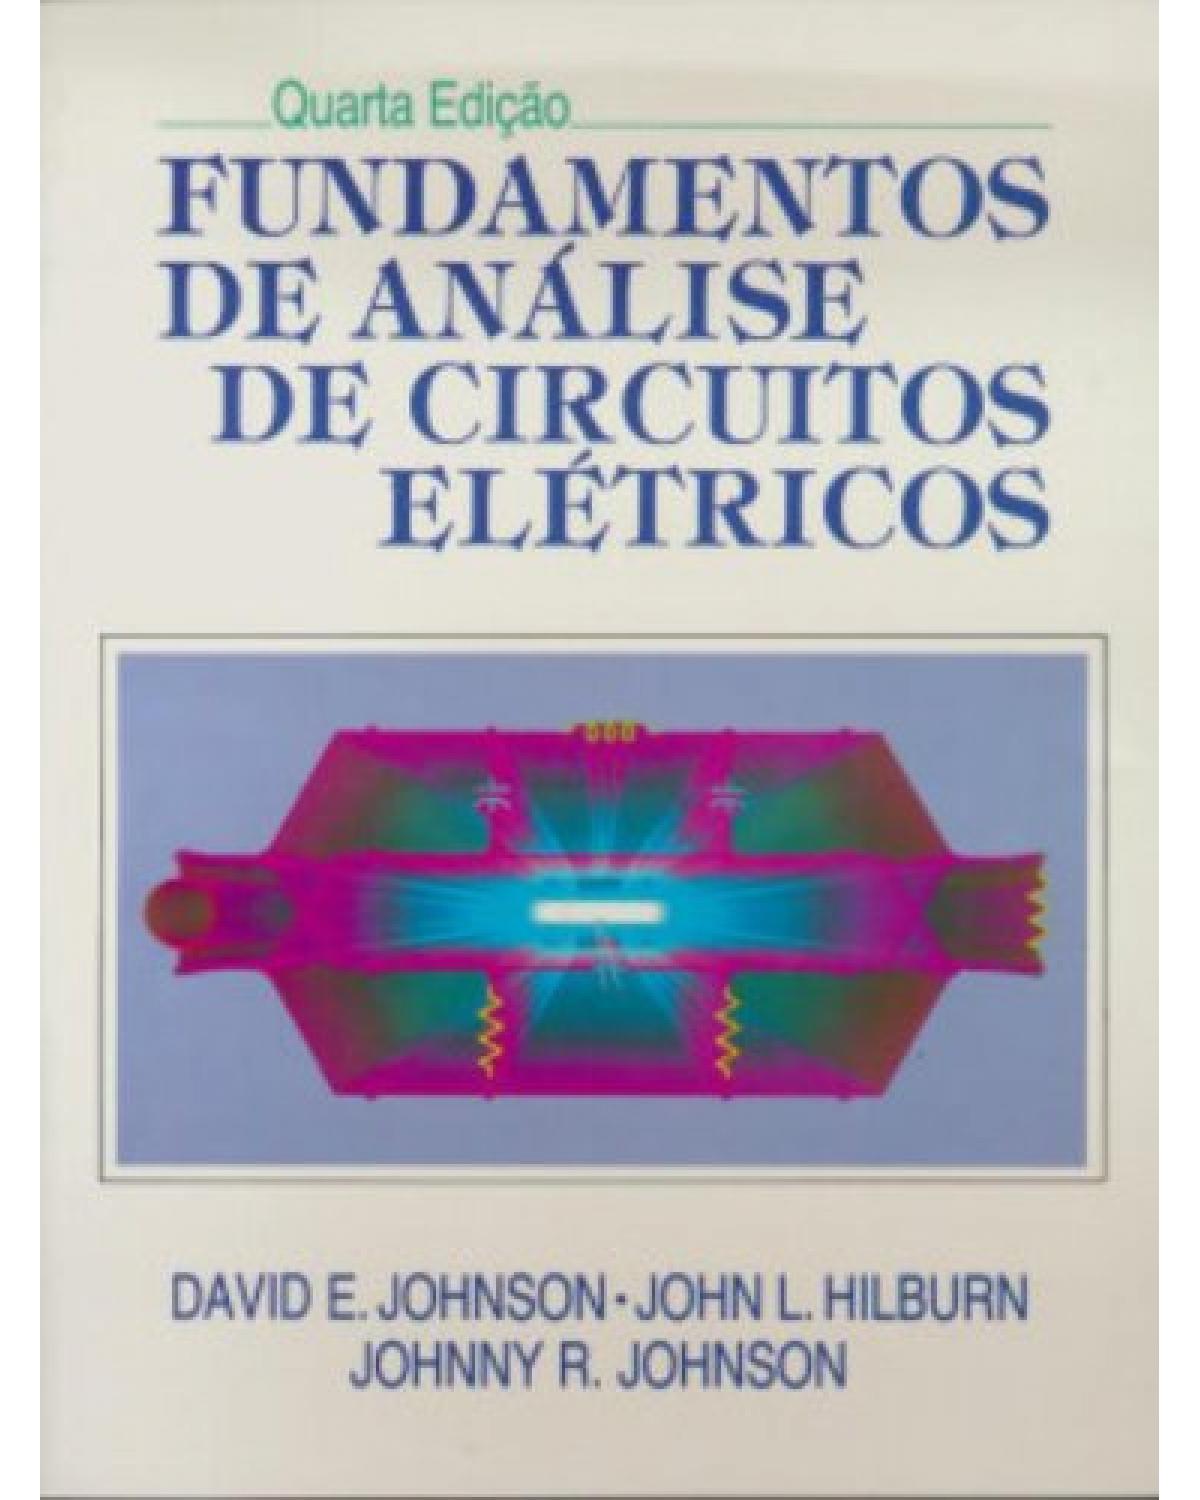 Fundamentos de análise de circuitos elétricos - 4ª Edição | 1994